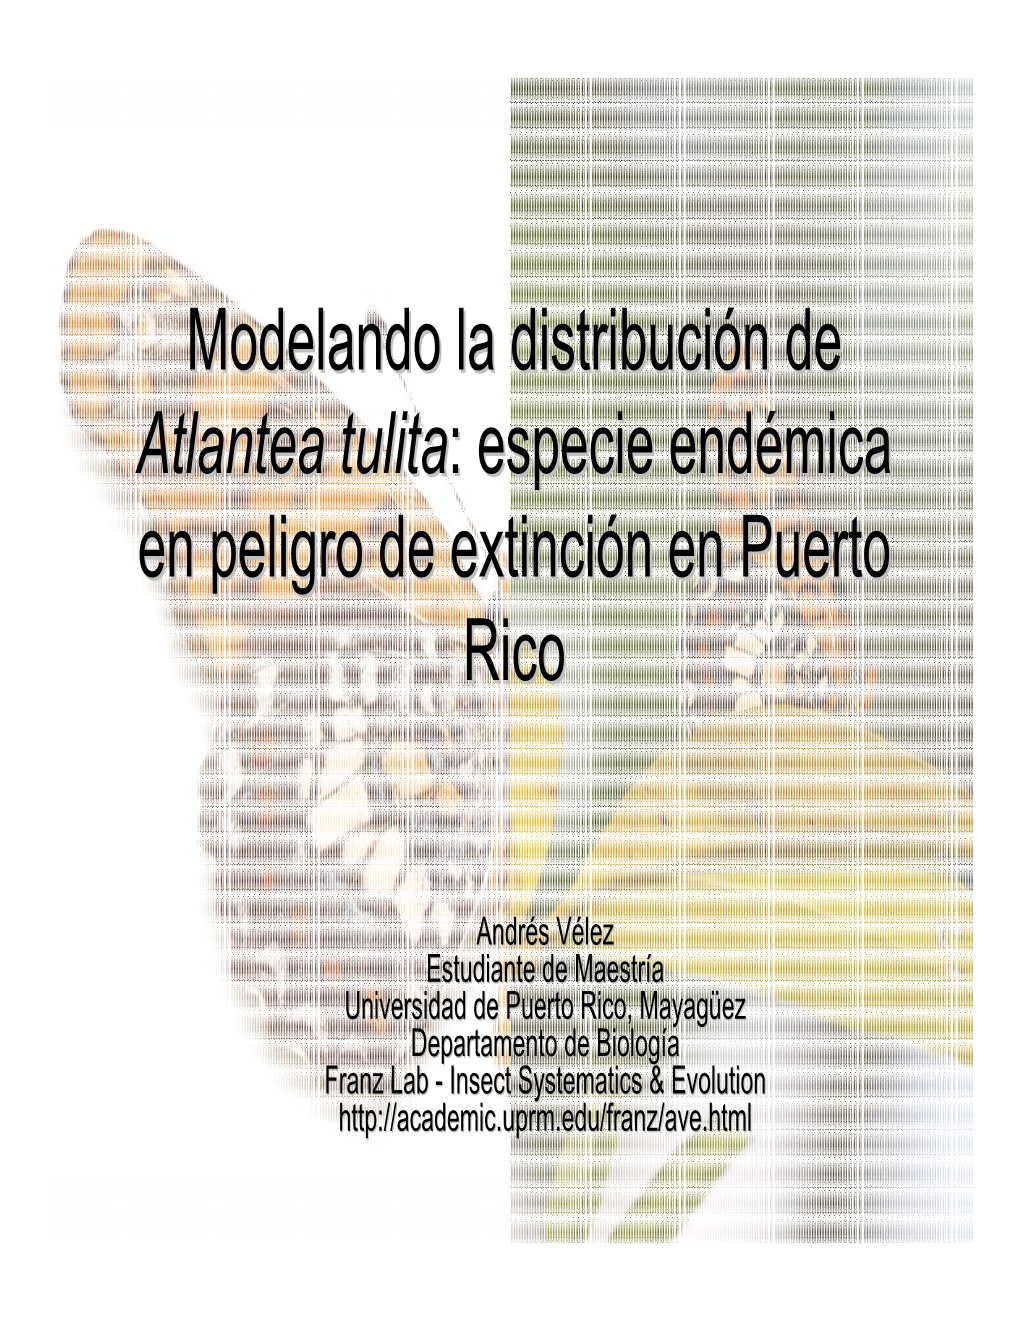 Modelando La Distribución De Atlantea Tulita : Especie Endémica En Peligro